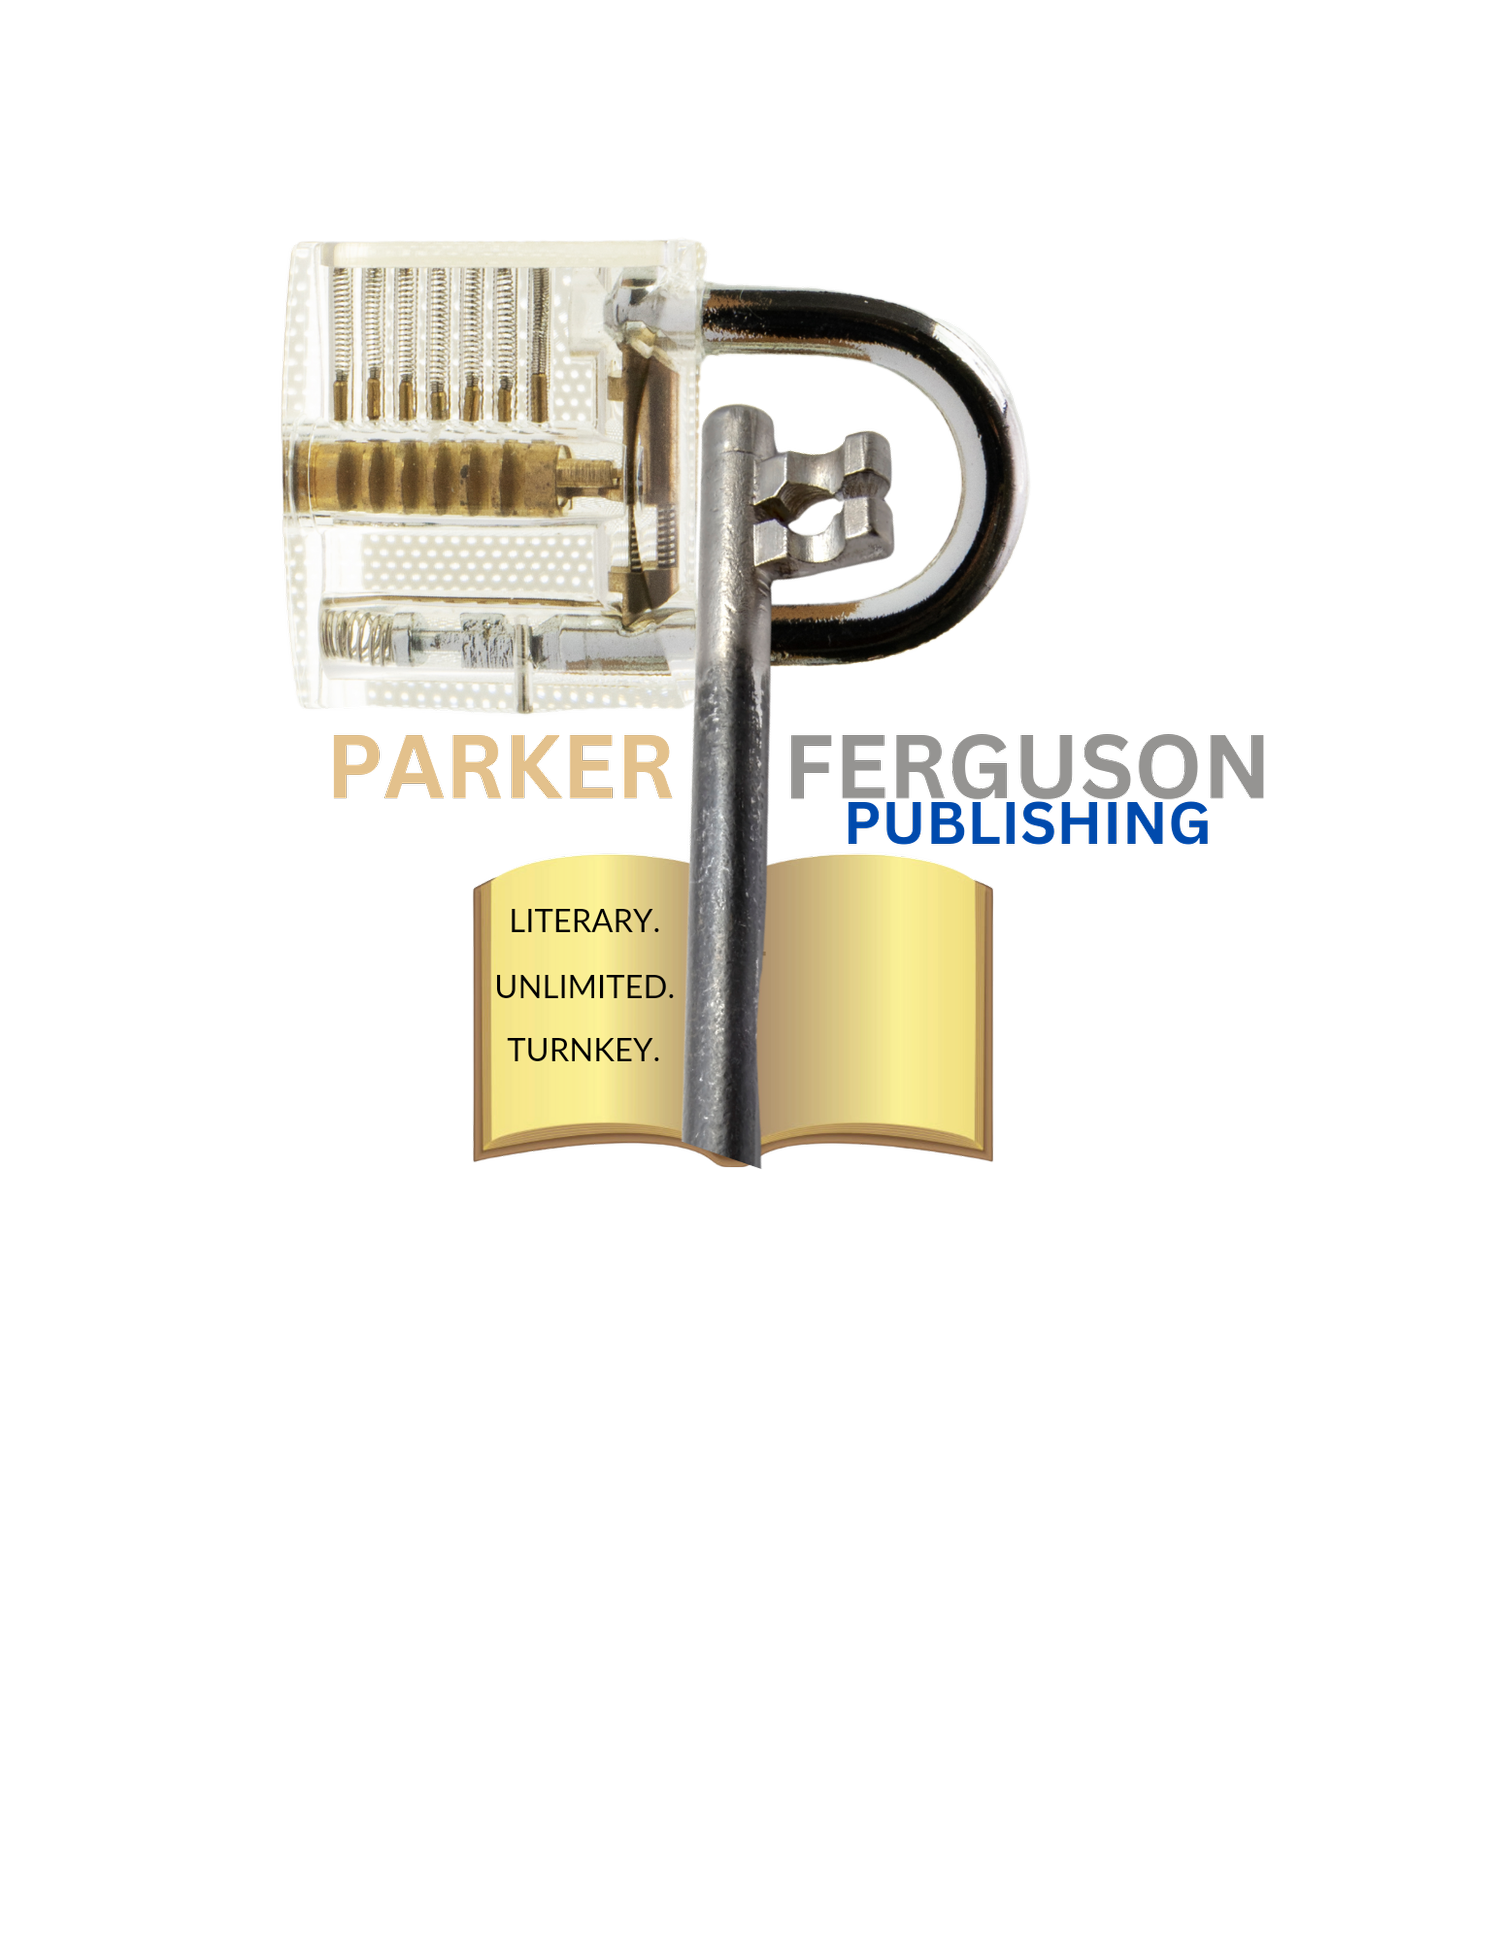 Parker Ferguson Publishing LLC